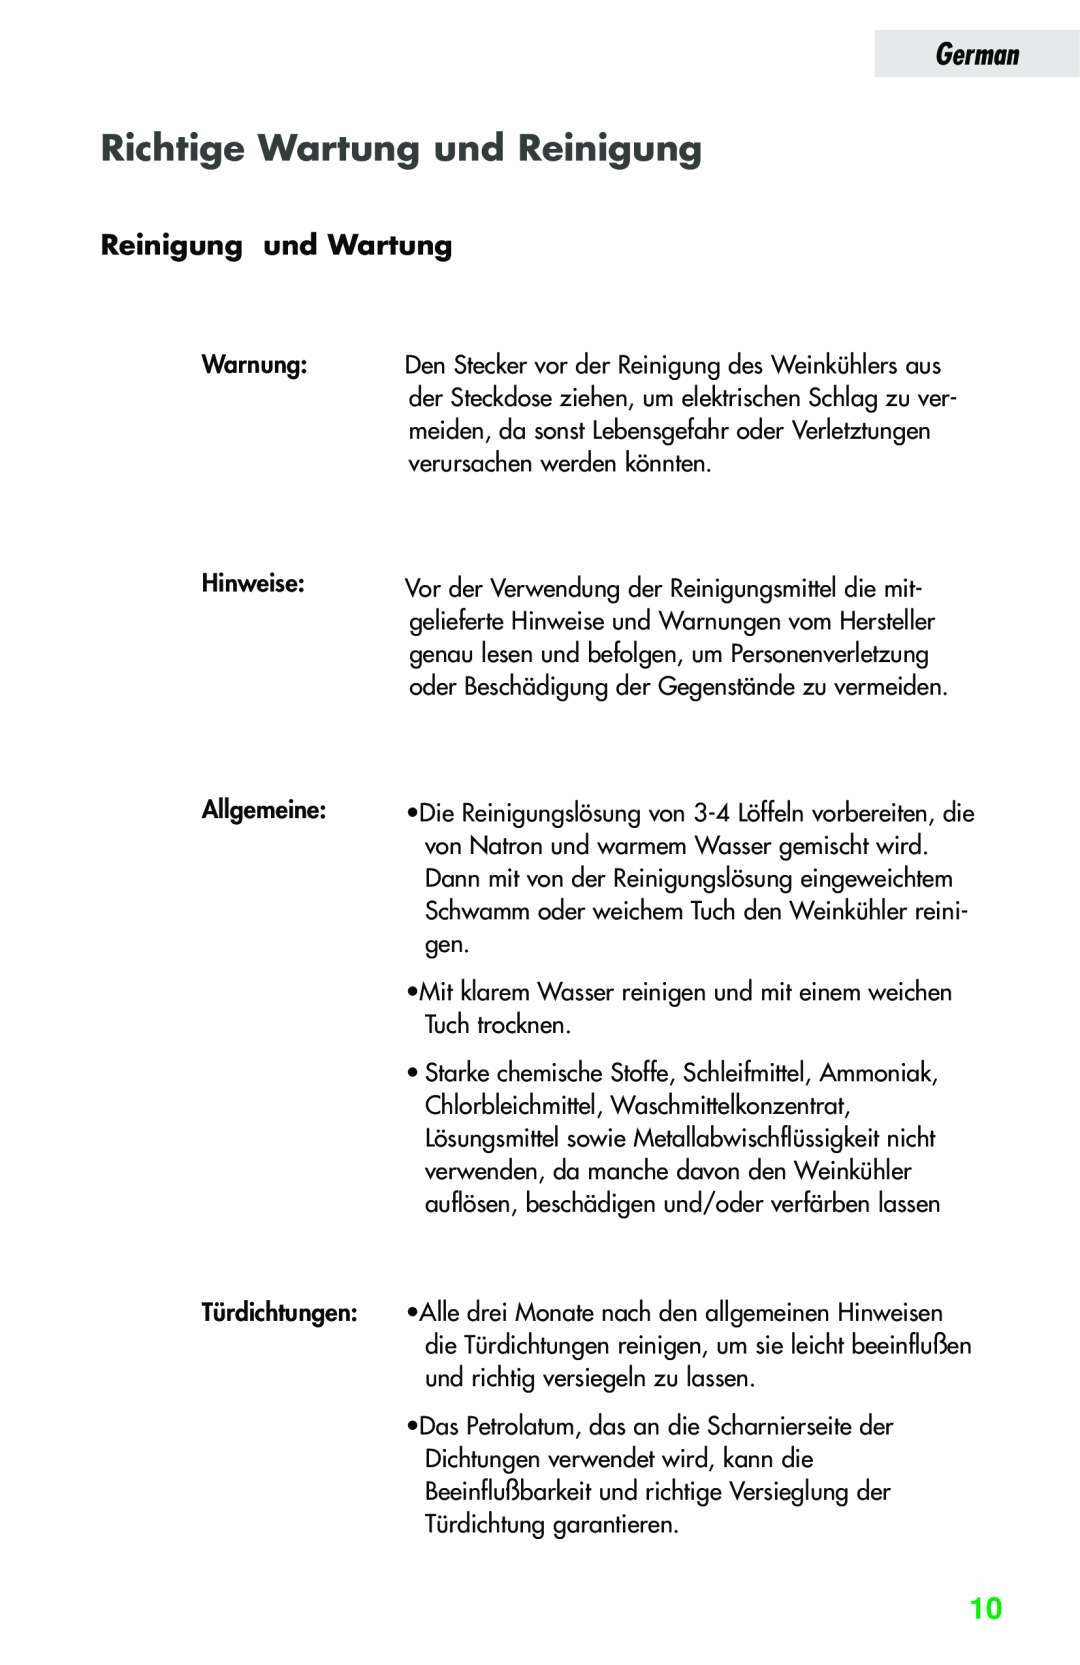 Haier JC-82GB manual Richtige Wartung und Reinigung, Reinigung und Wartung, German 